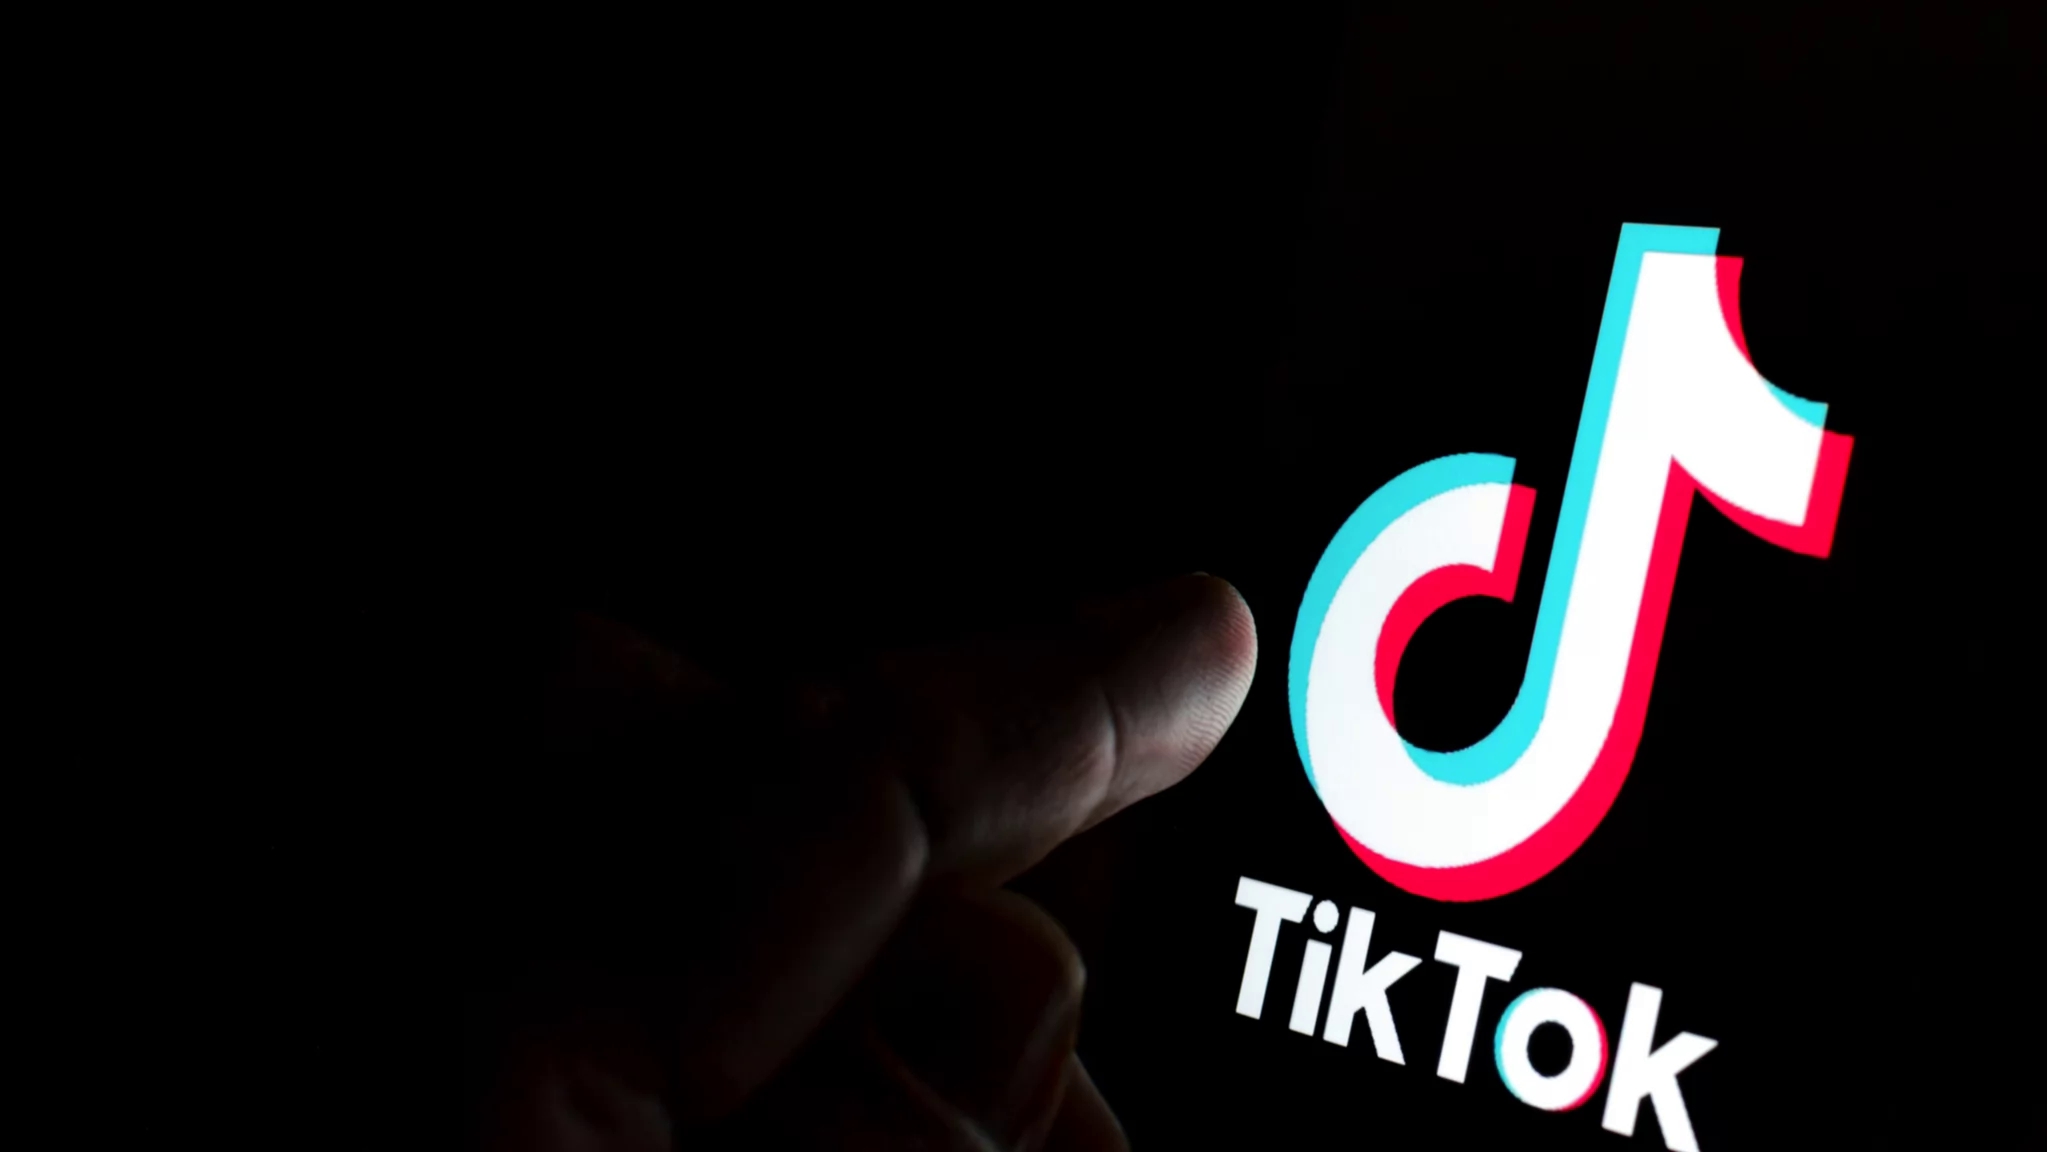 TikTok ограничит экранное время для детей и подростков 60 минутами в день          